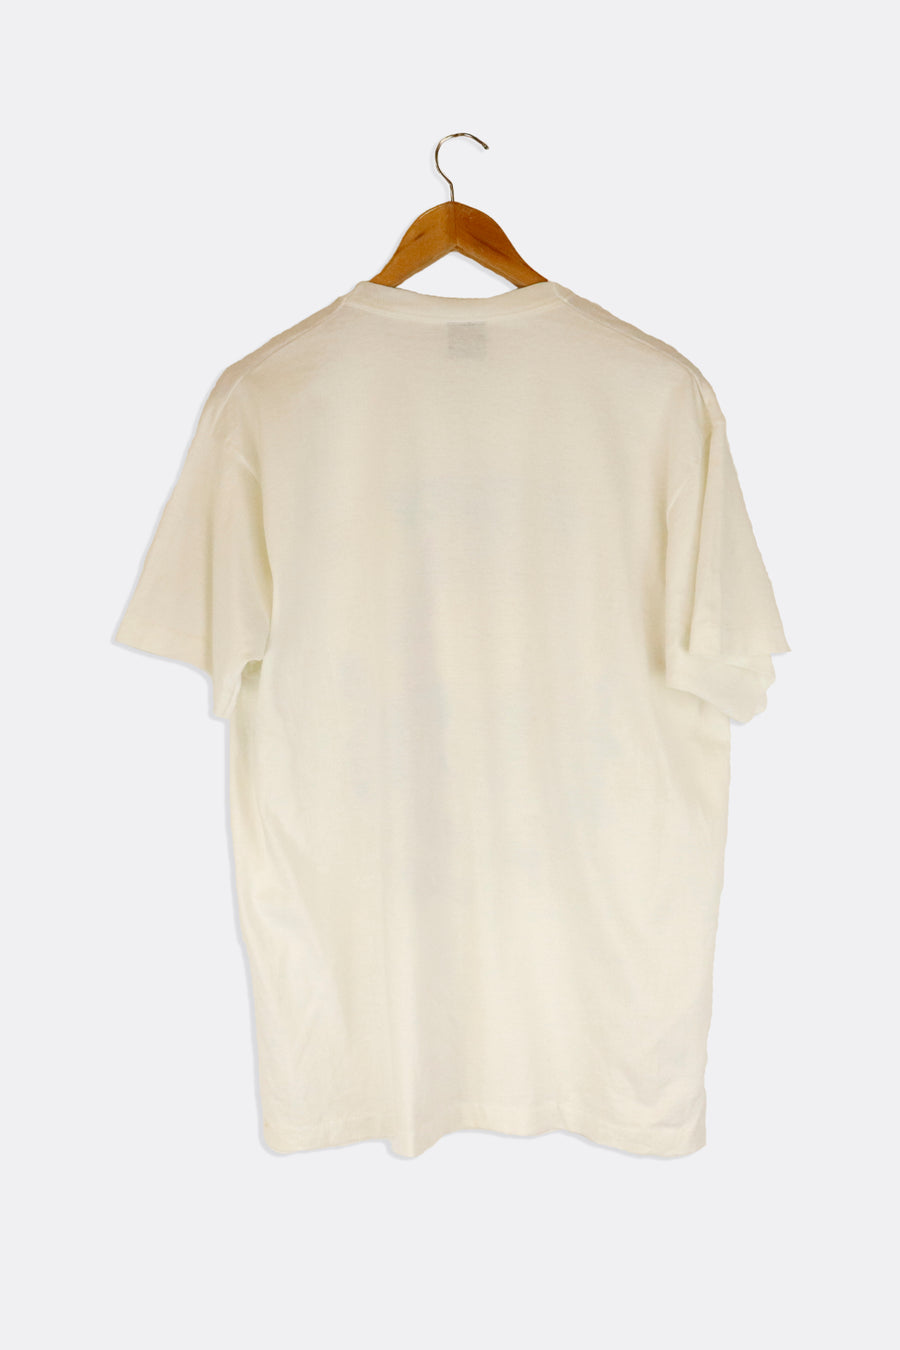 Vintage 1991 NFL Mike Utley Graphic Bobble Head T Shirt Sz XL